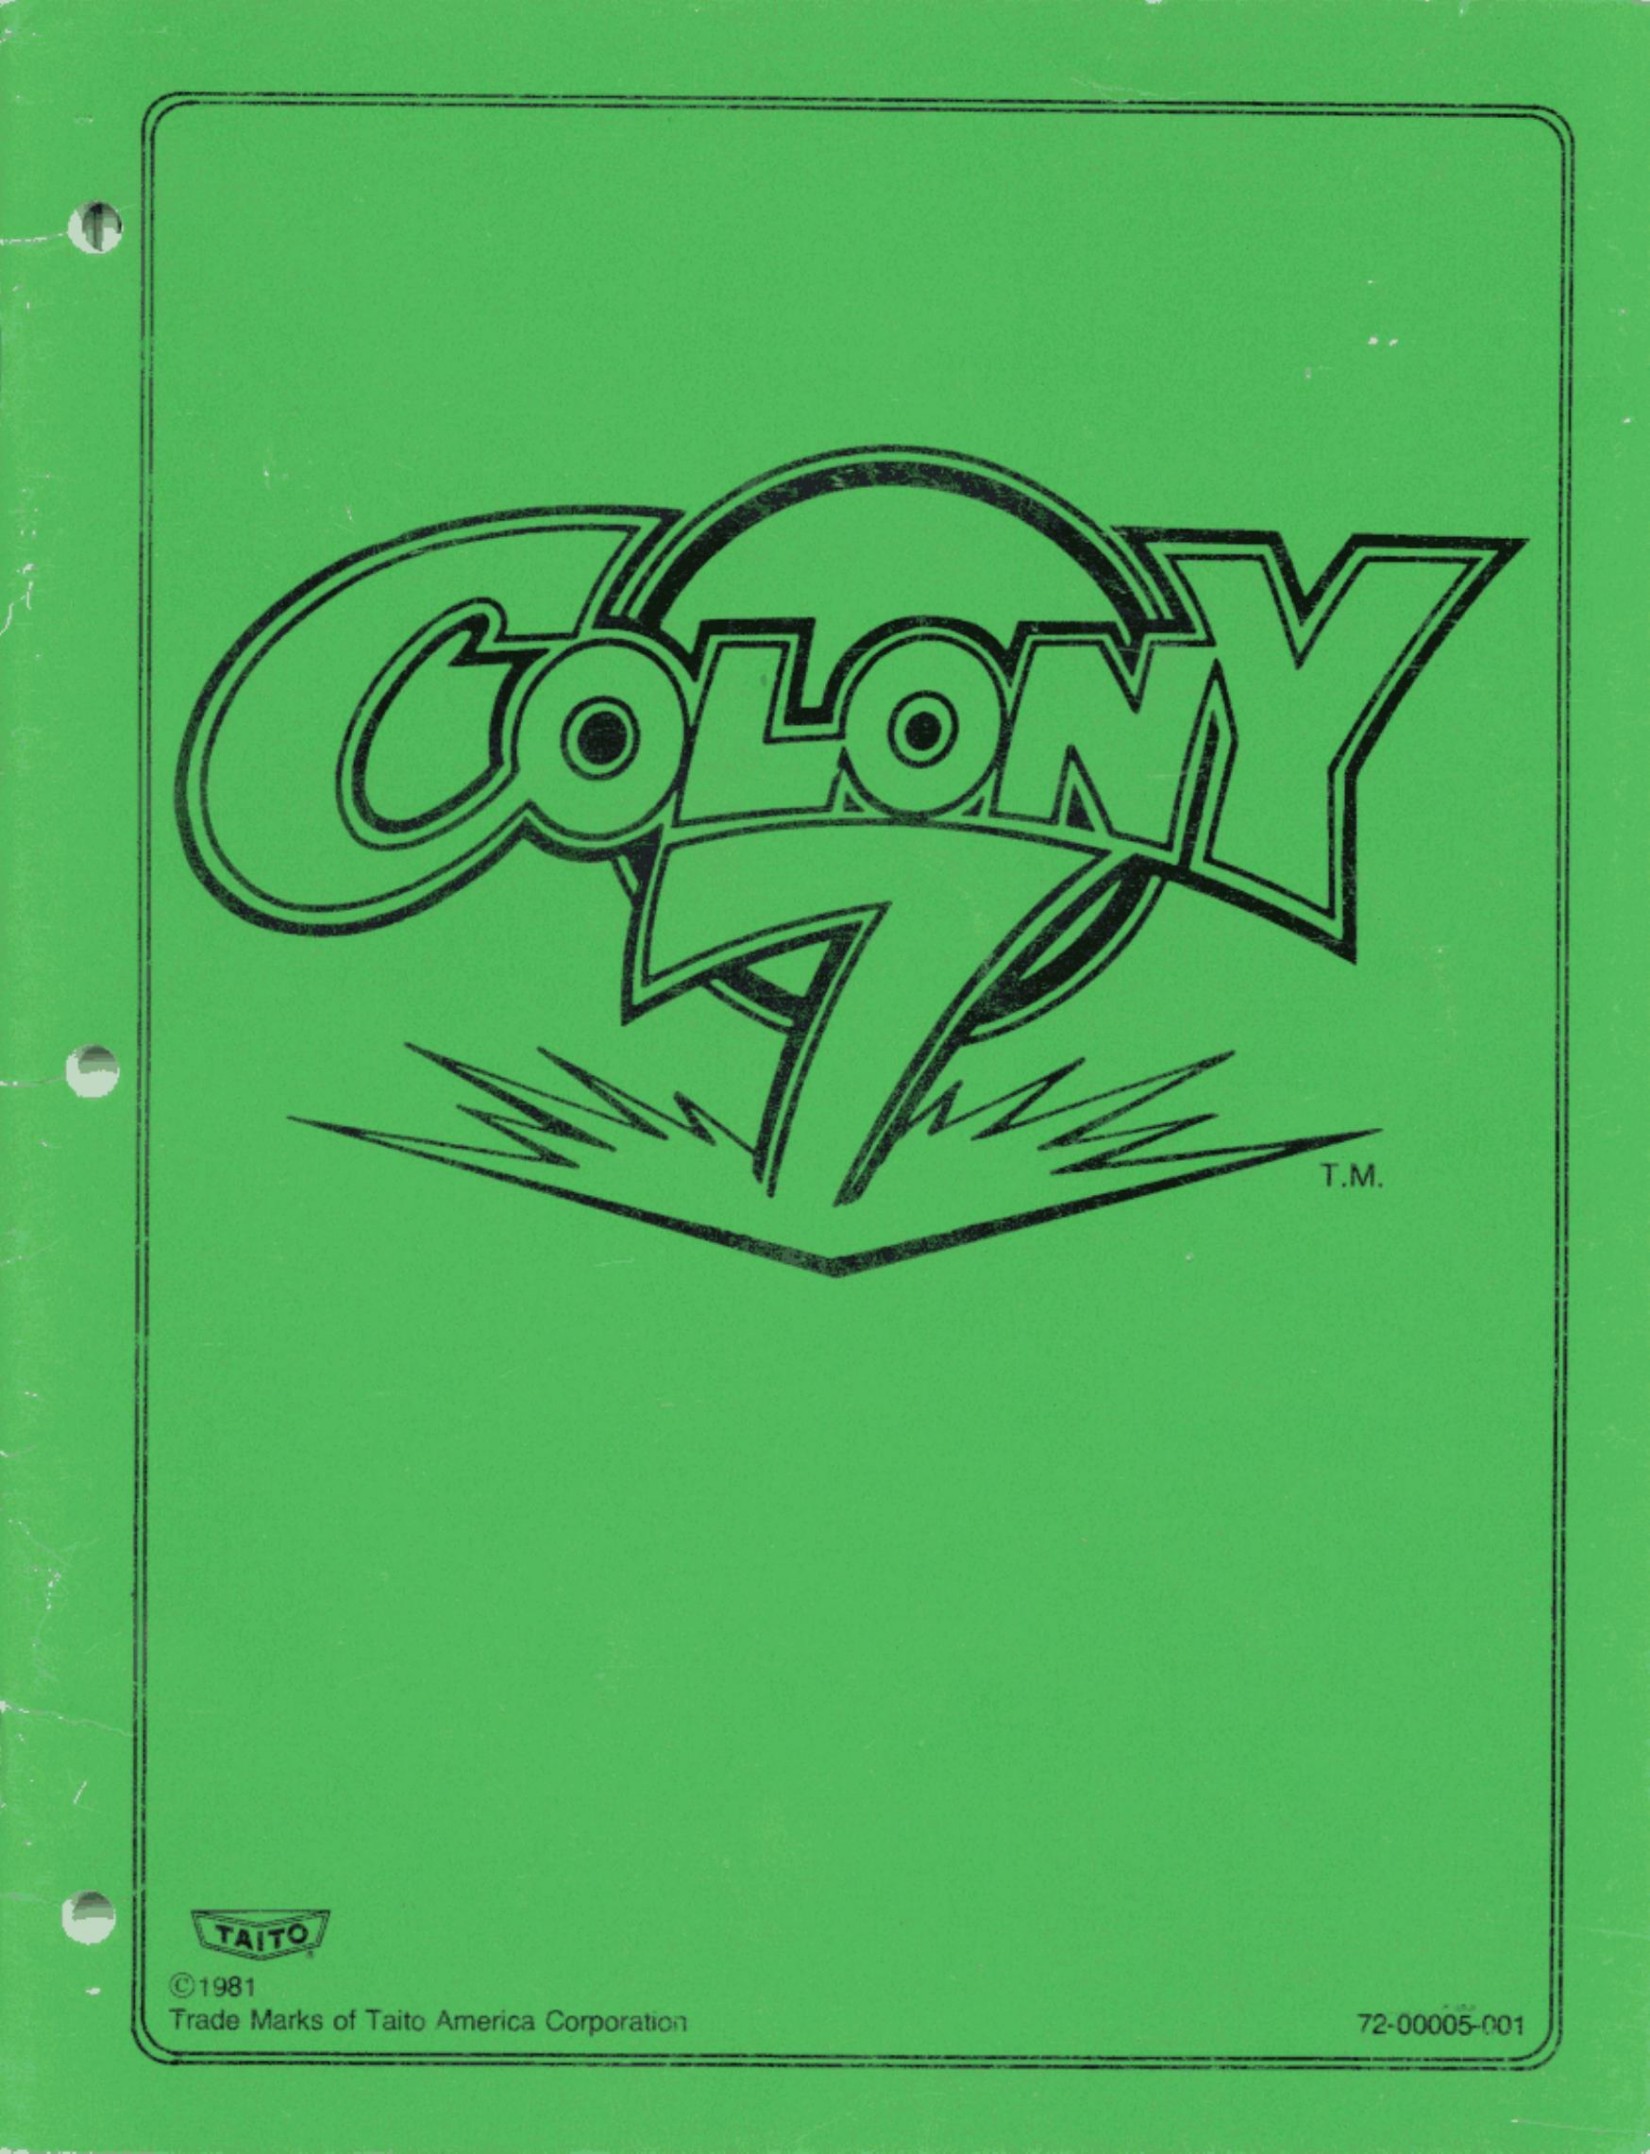 Colony 7 Manual